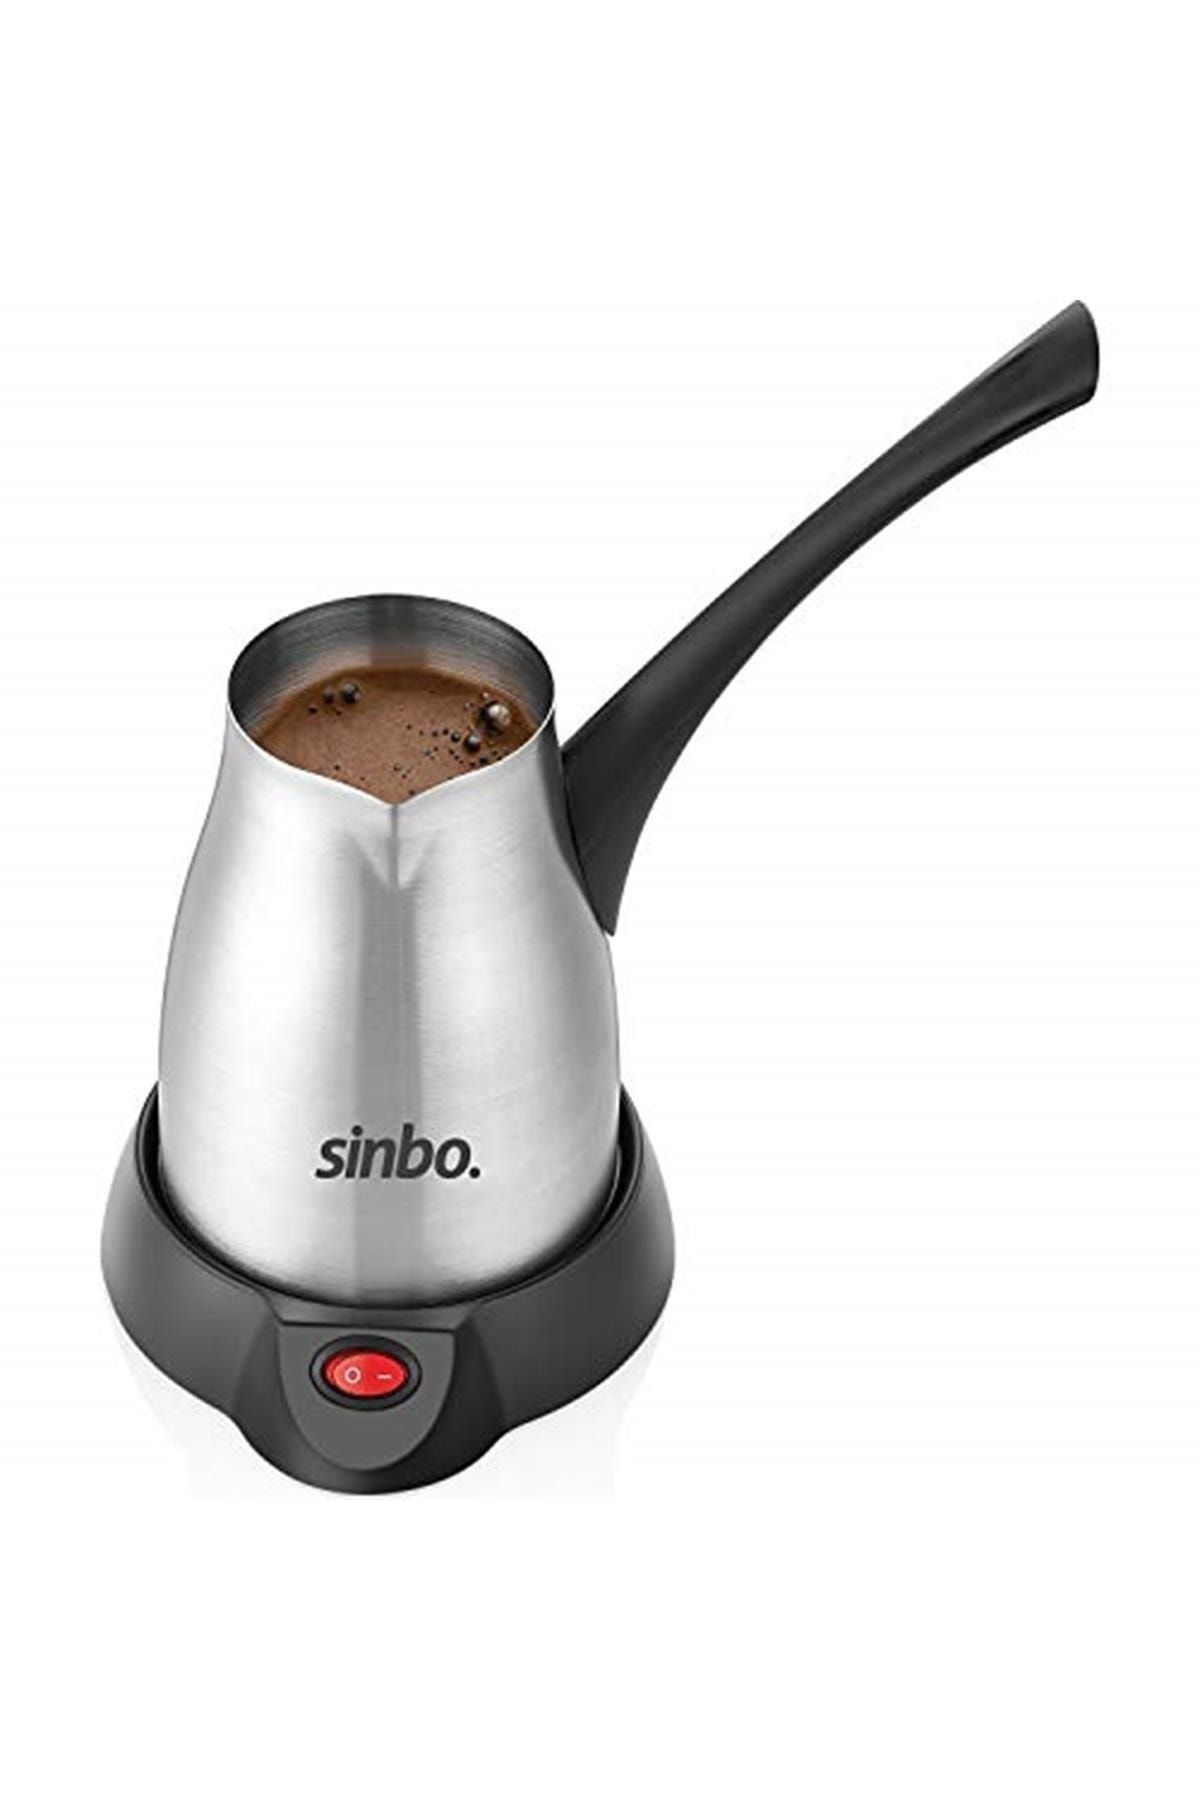 Sinbo Scm-2957 Elektrikli Cezve Kahve Makinesi, Inox